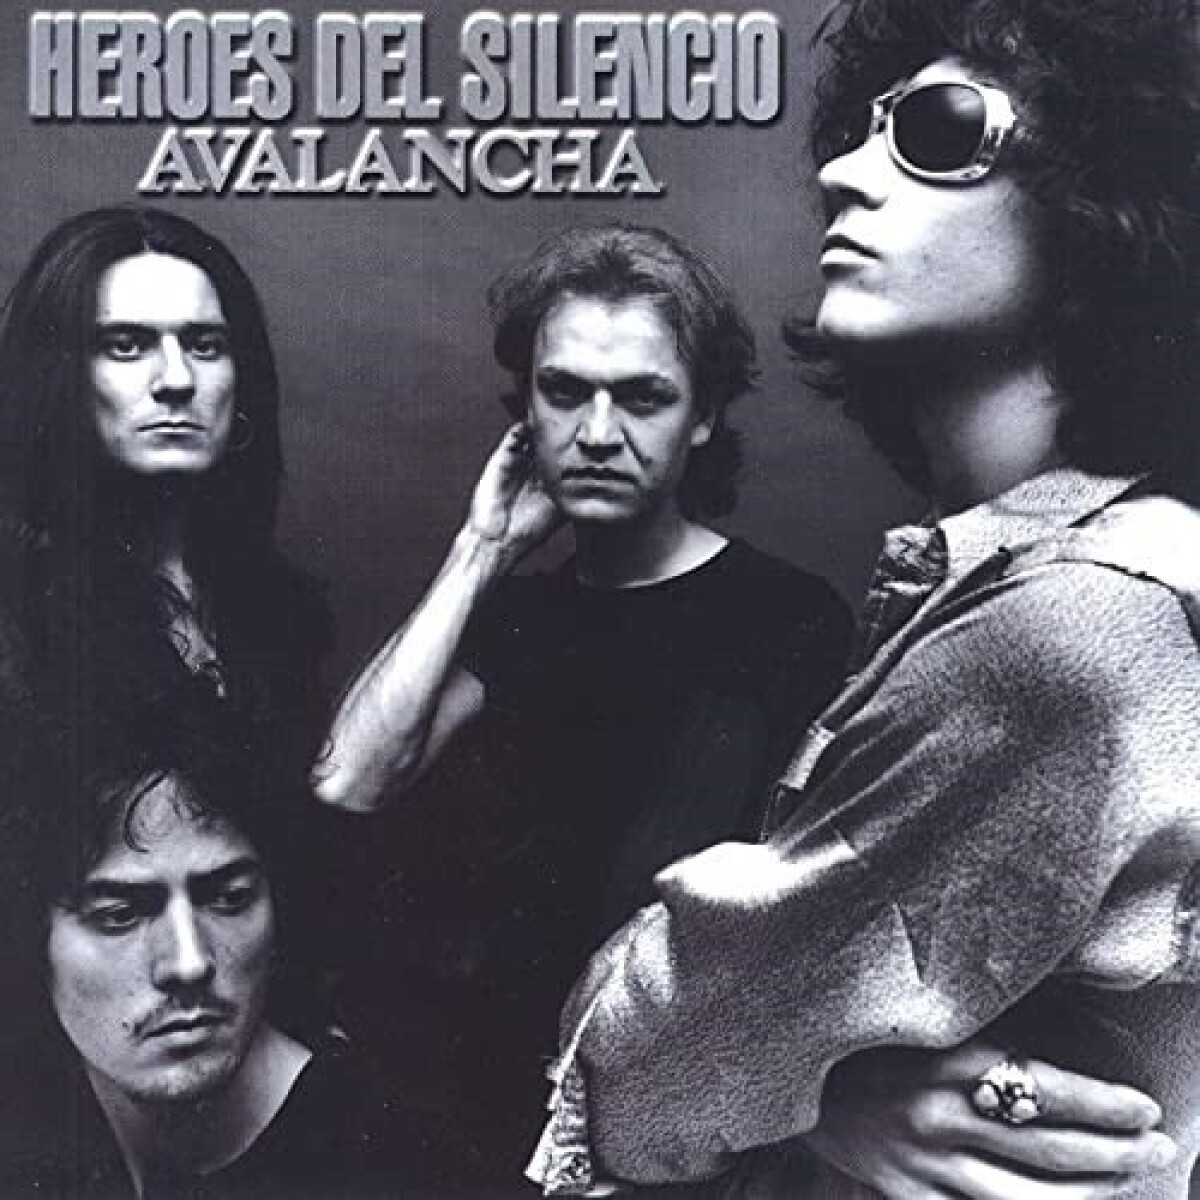 Heroes Del Silencio - Avalancha 